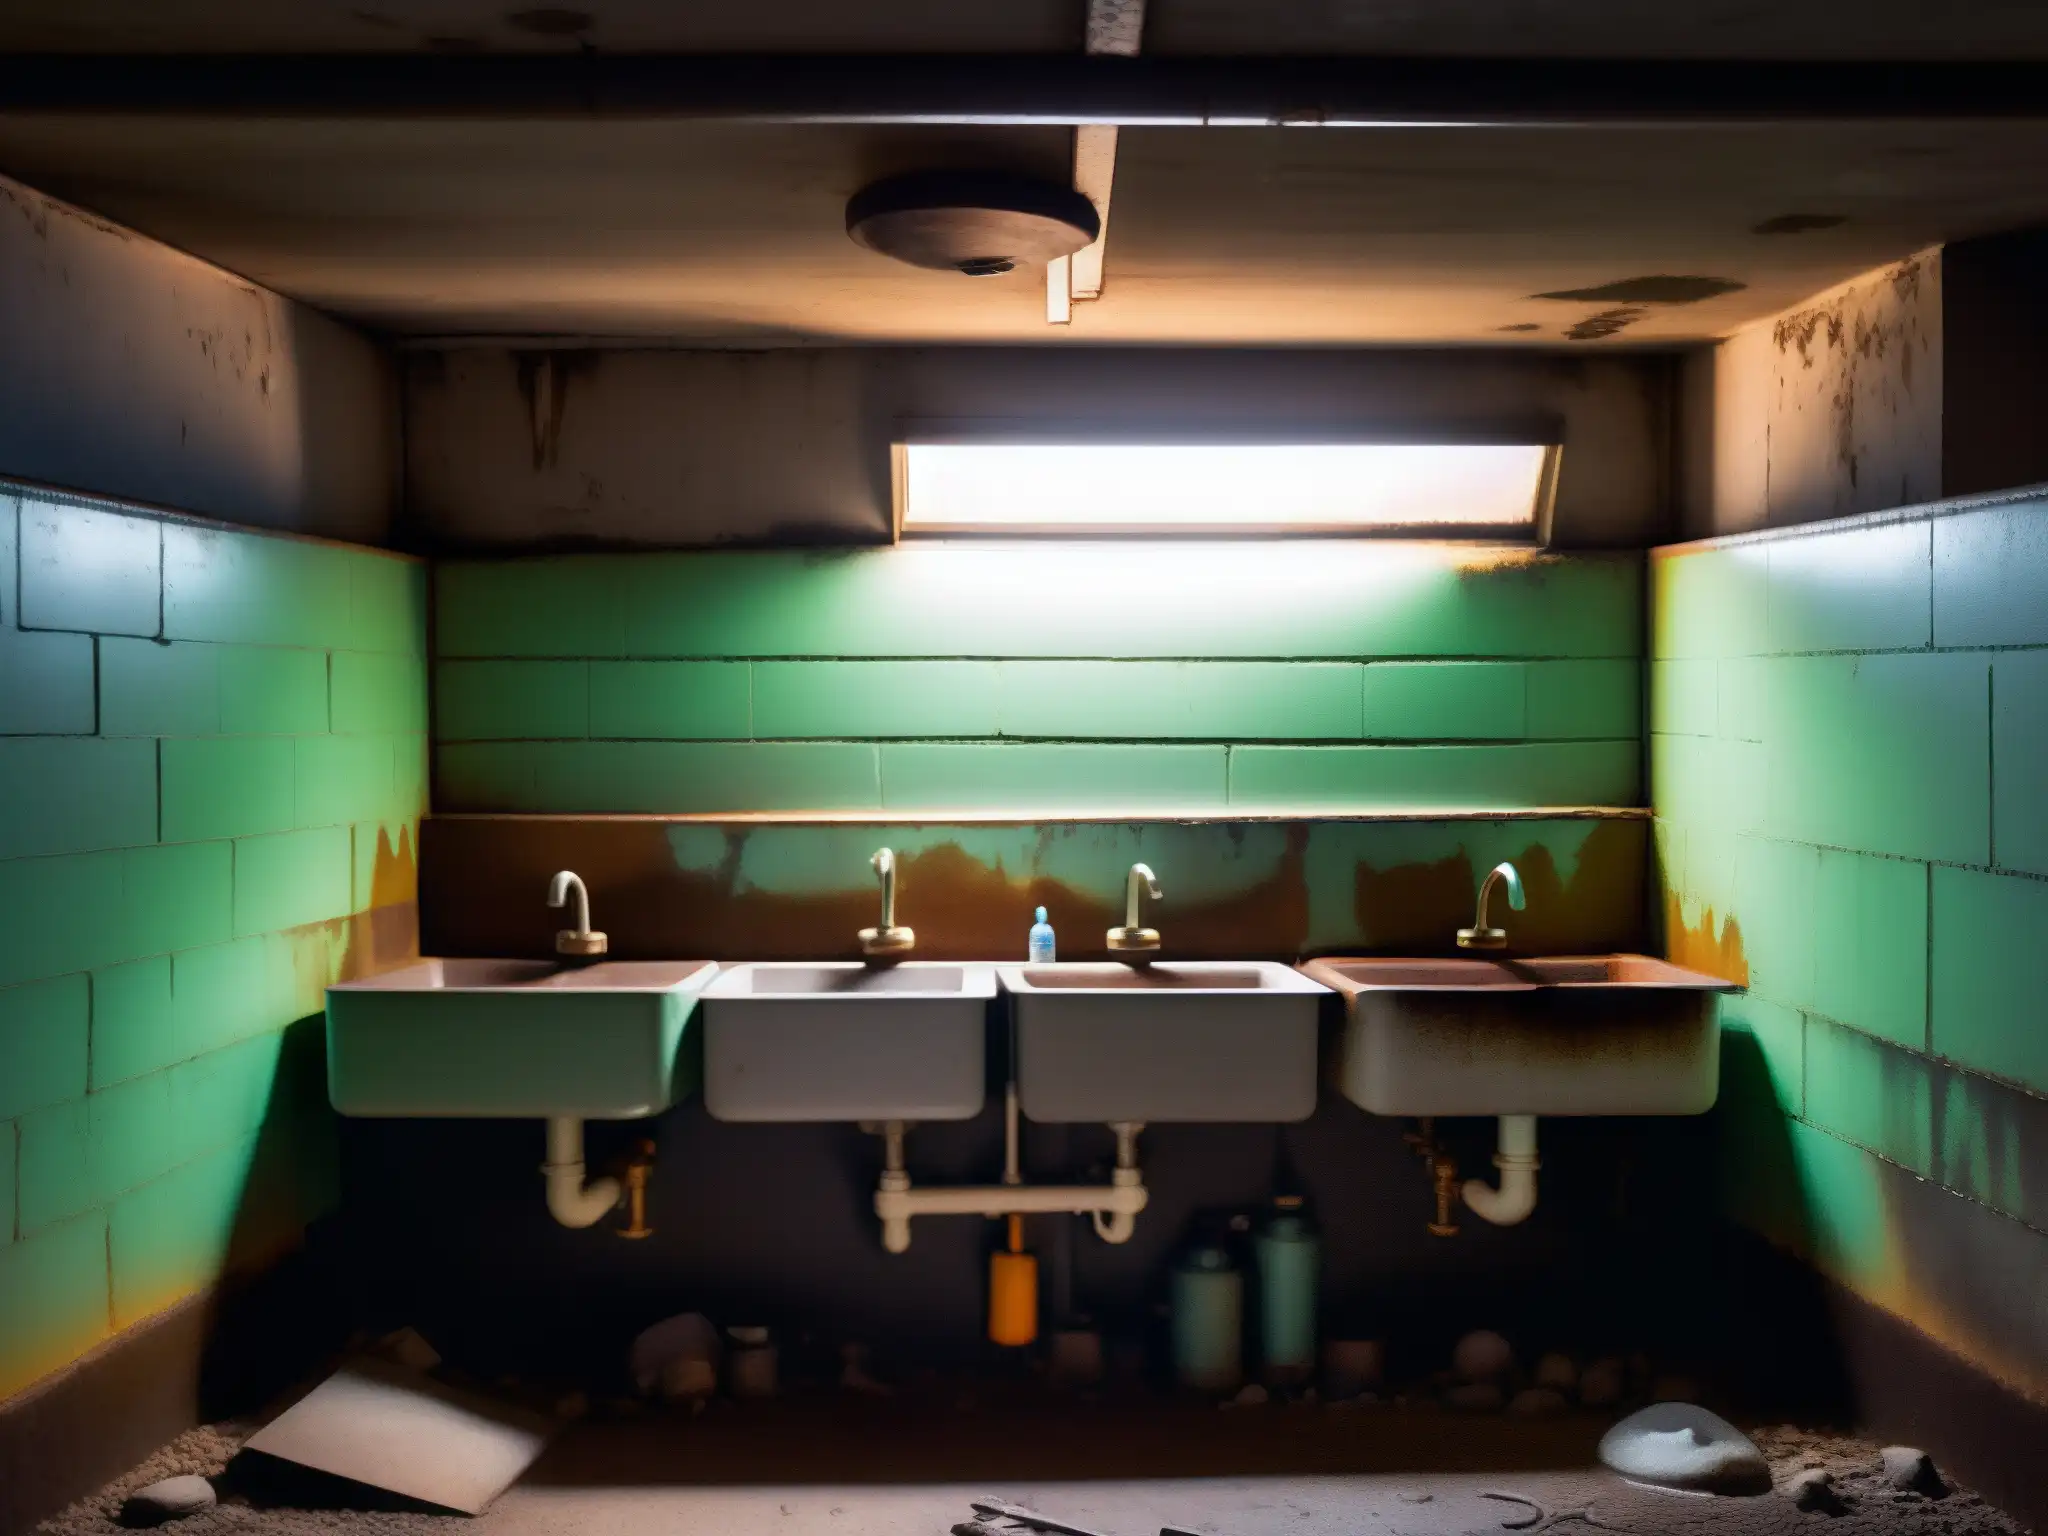 Un inquietante baño escolar con luces tenues y grafitis en las puertas